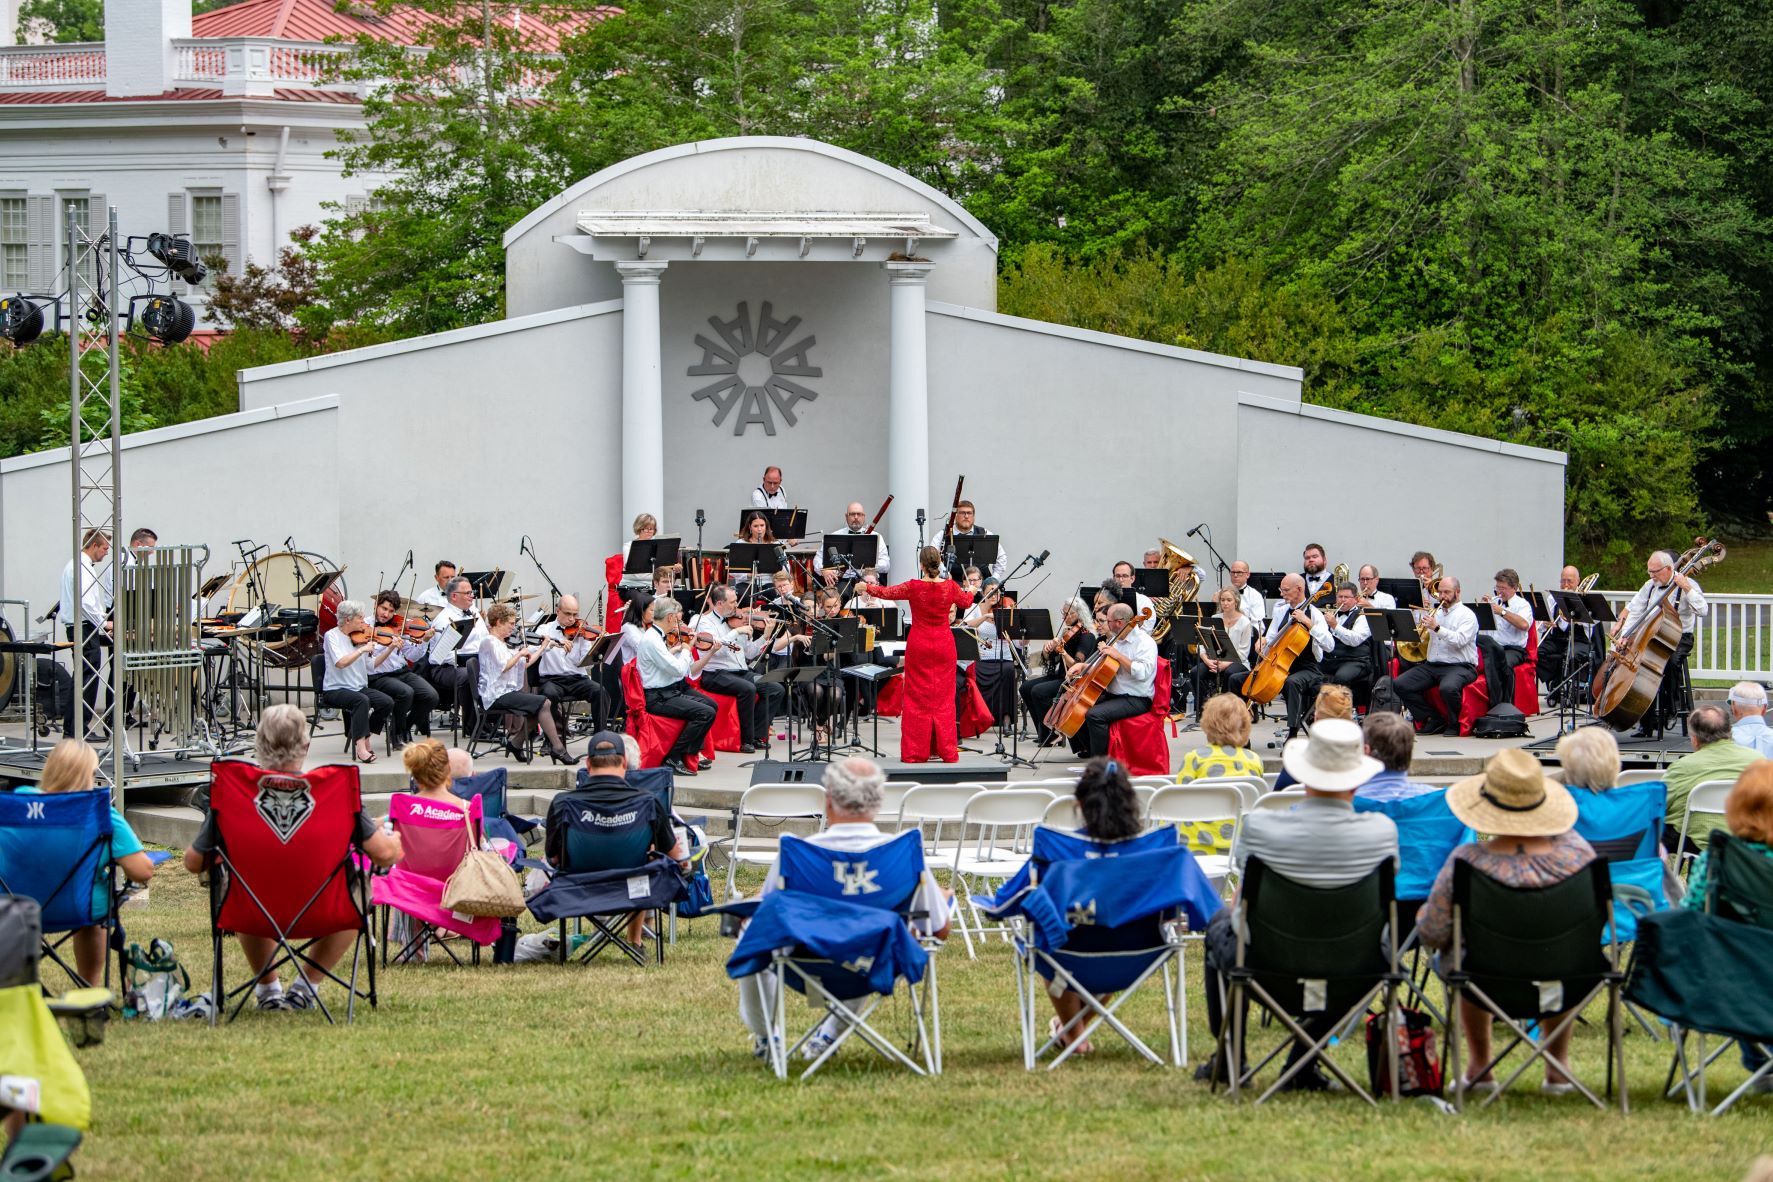 Enjoy the outdoor concert at Allandale Mansion.